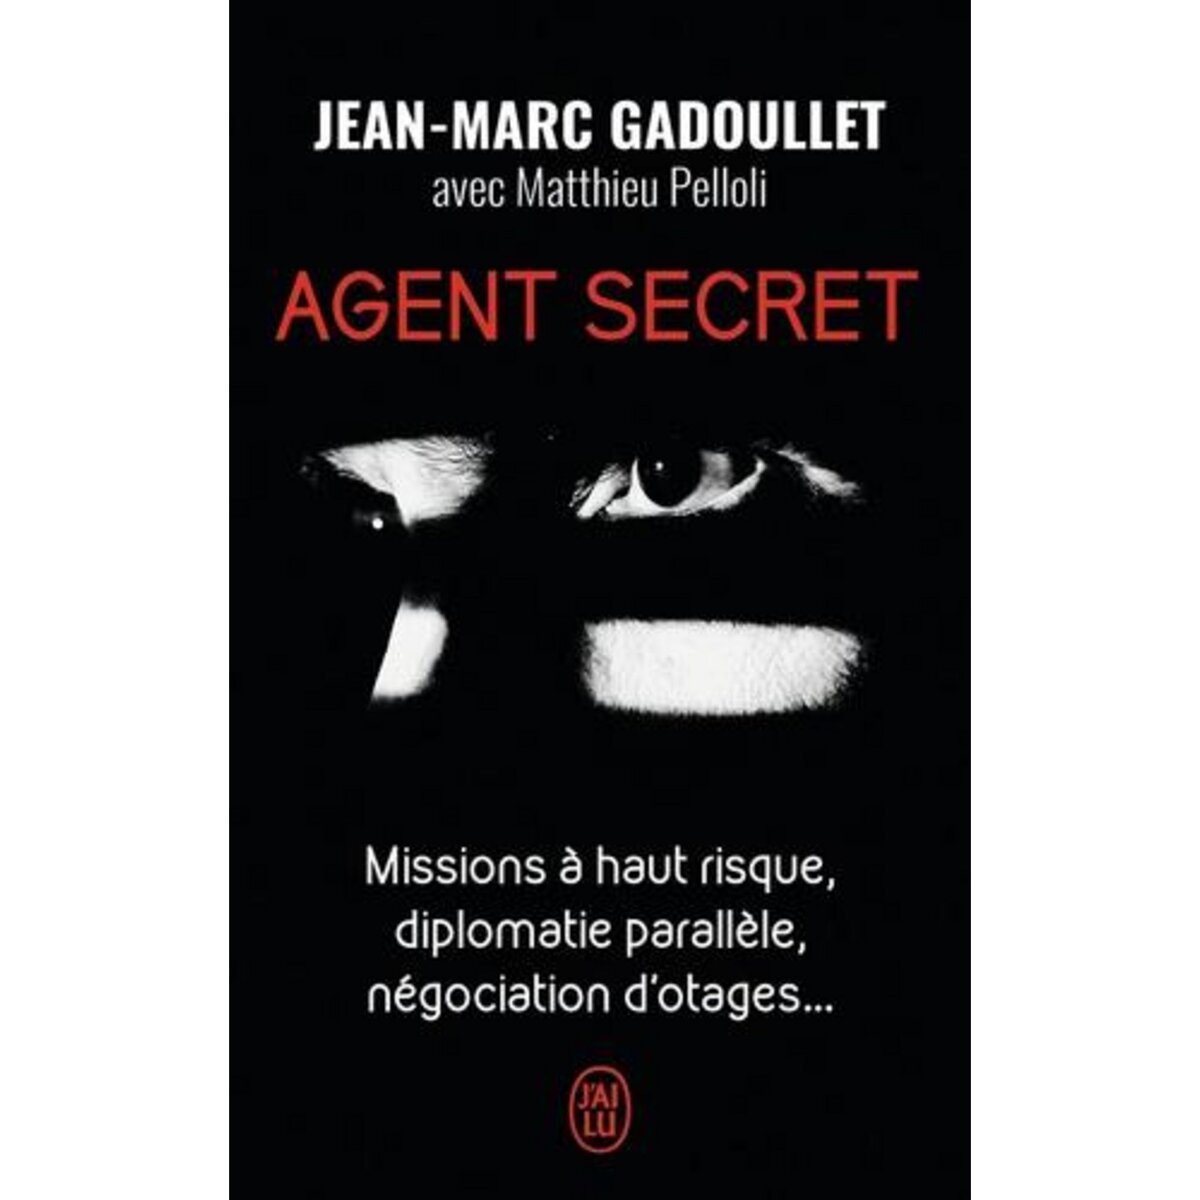  AGENT SECRET, Gadoullet Jean-Marc